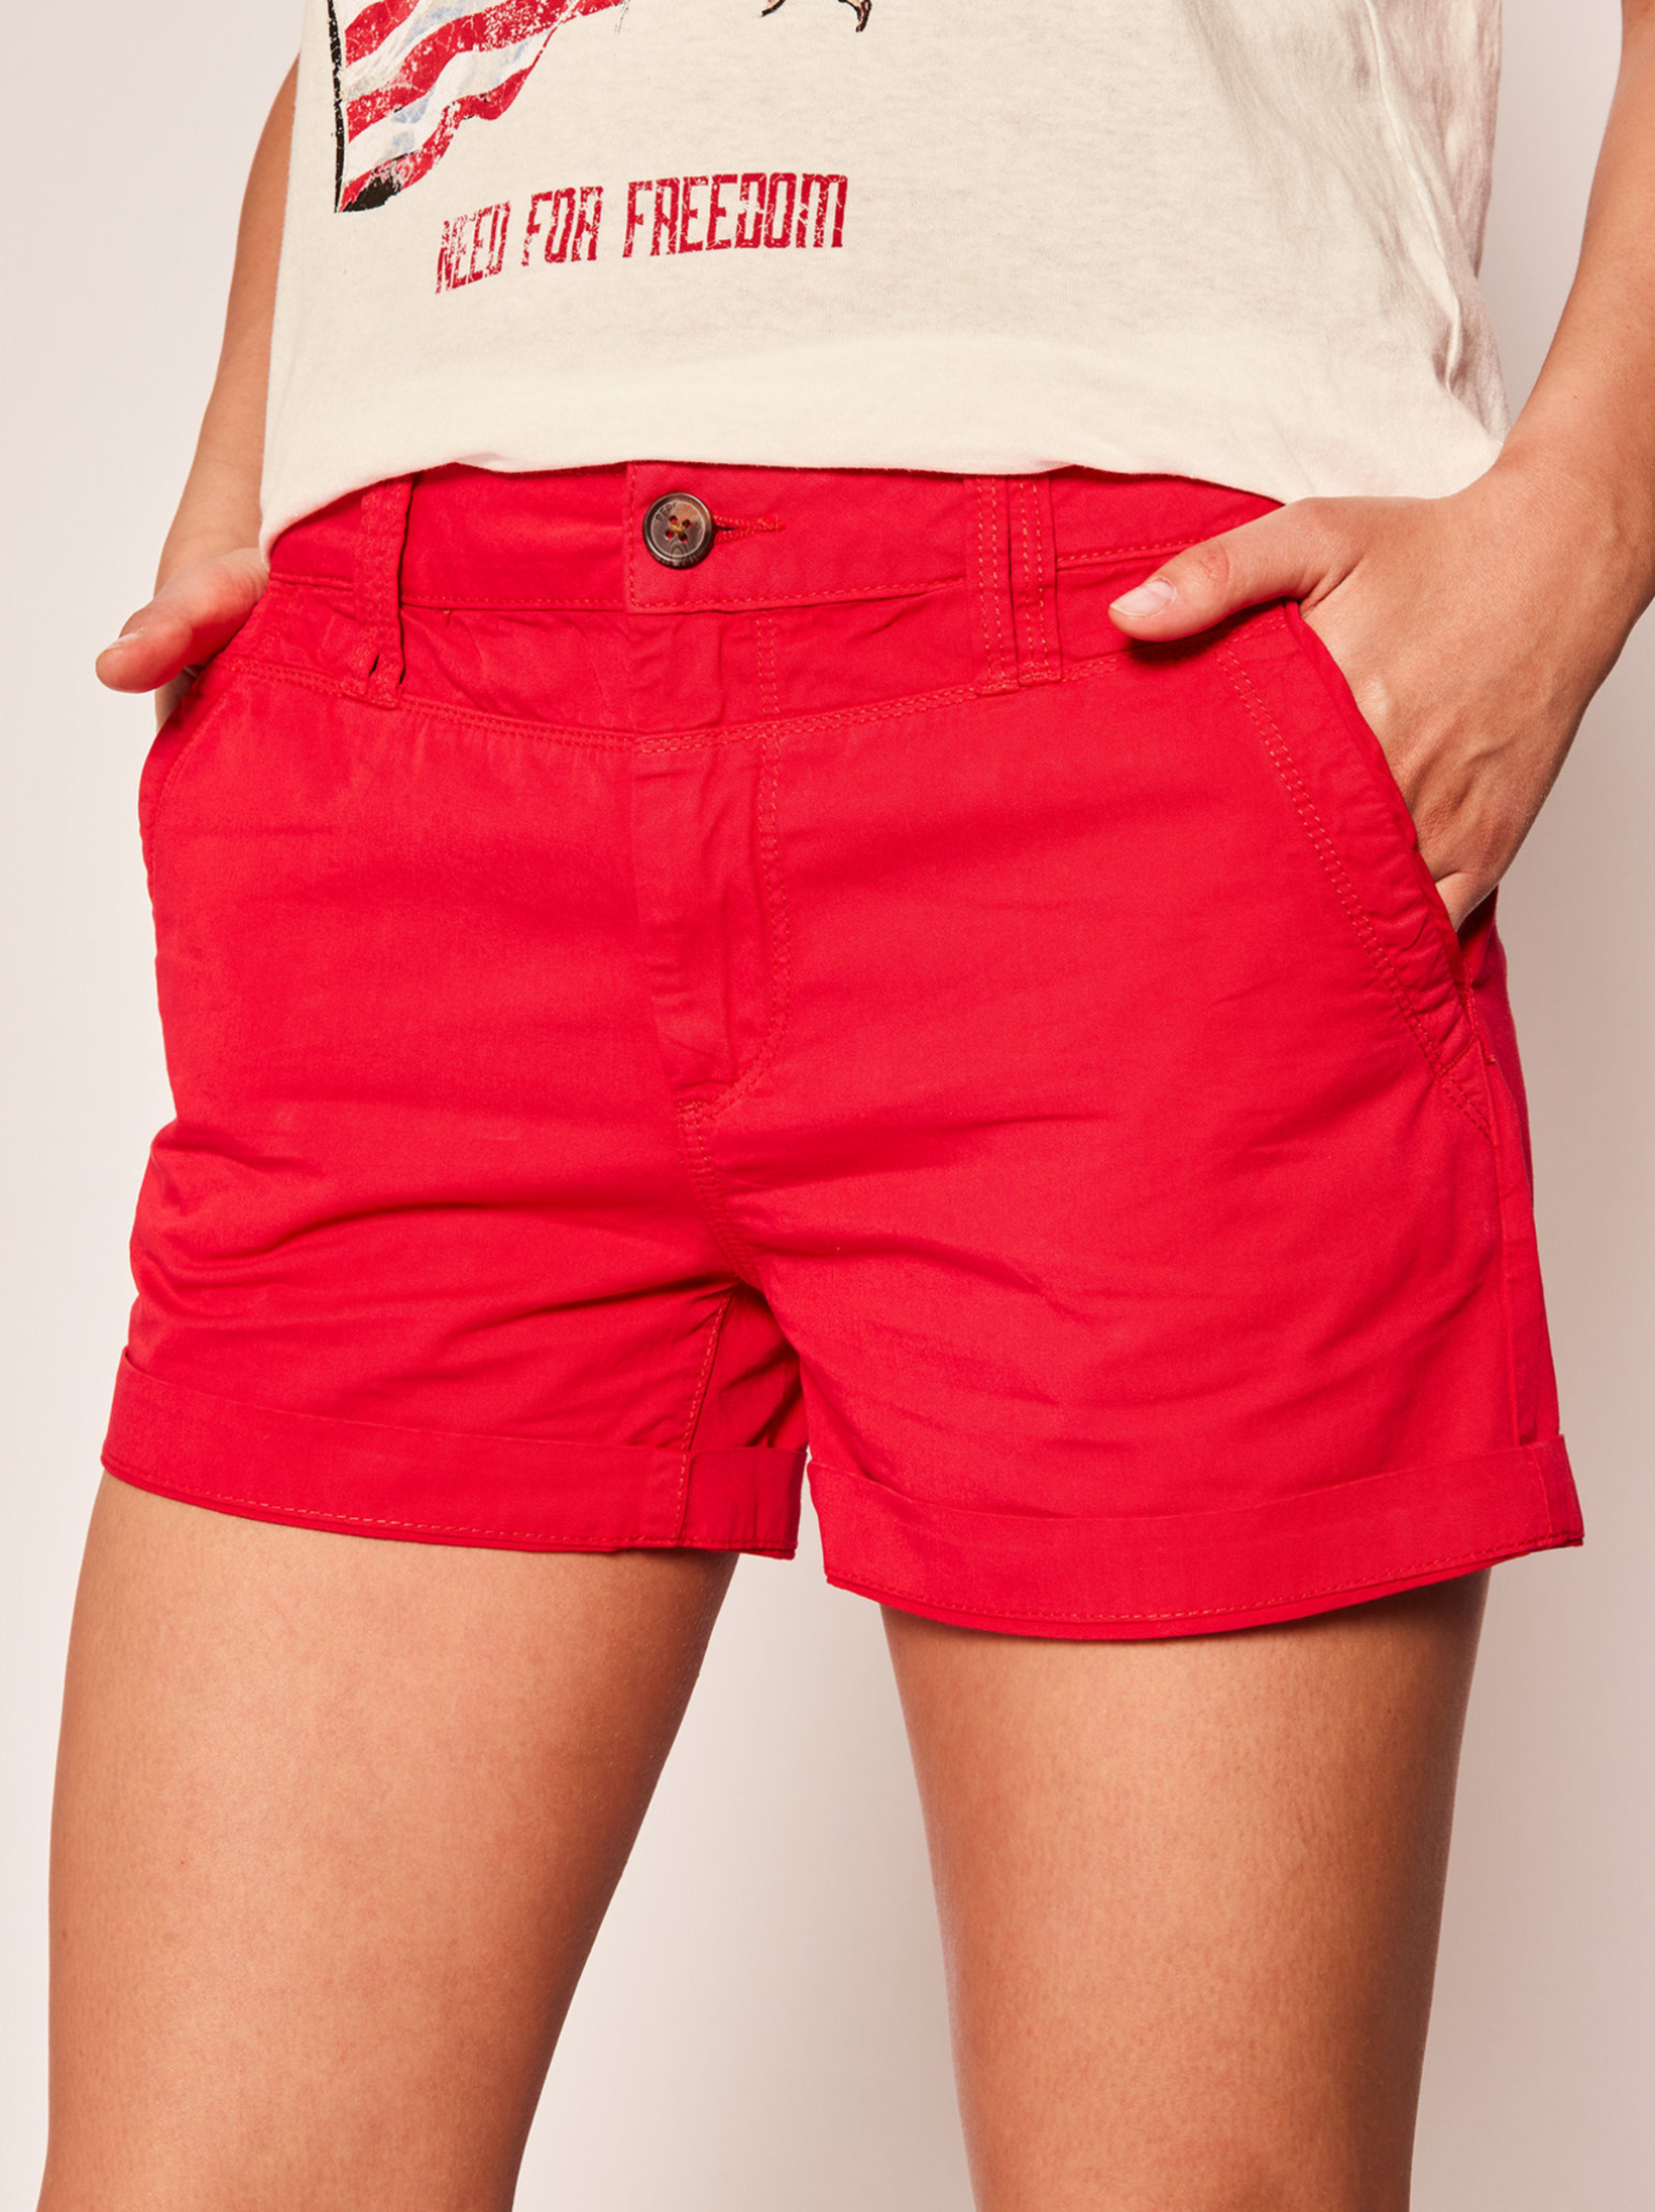 Pepe Jeans dámské červené šortky Balboa - 28 (238)